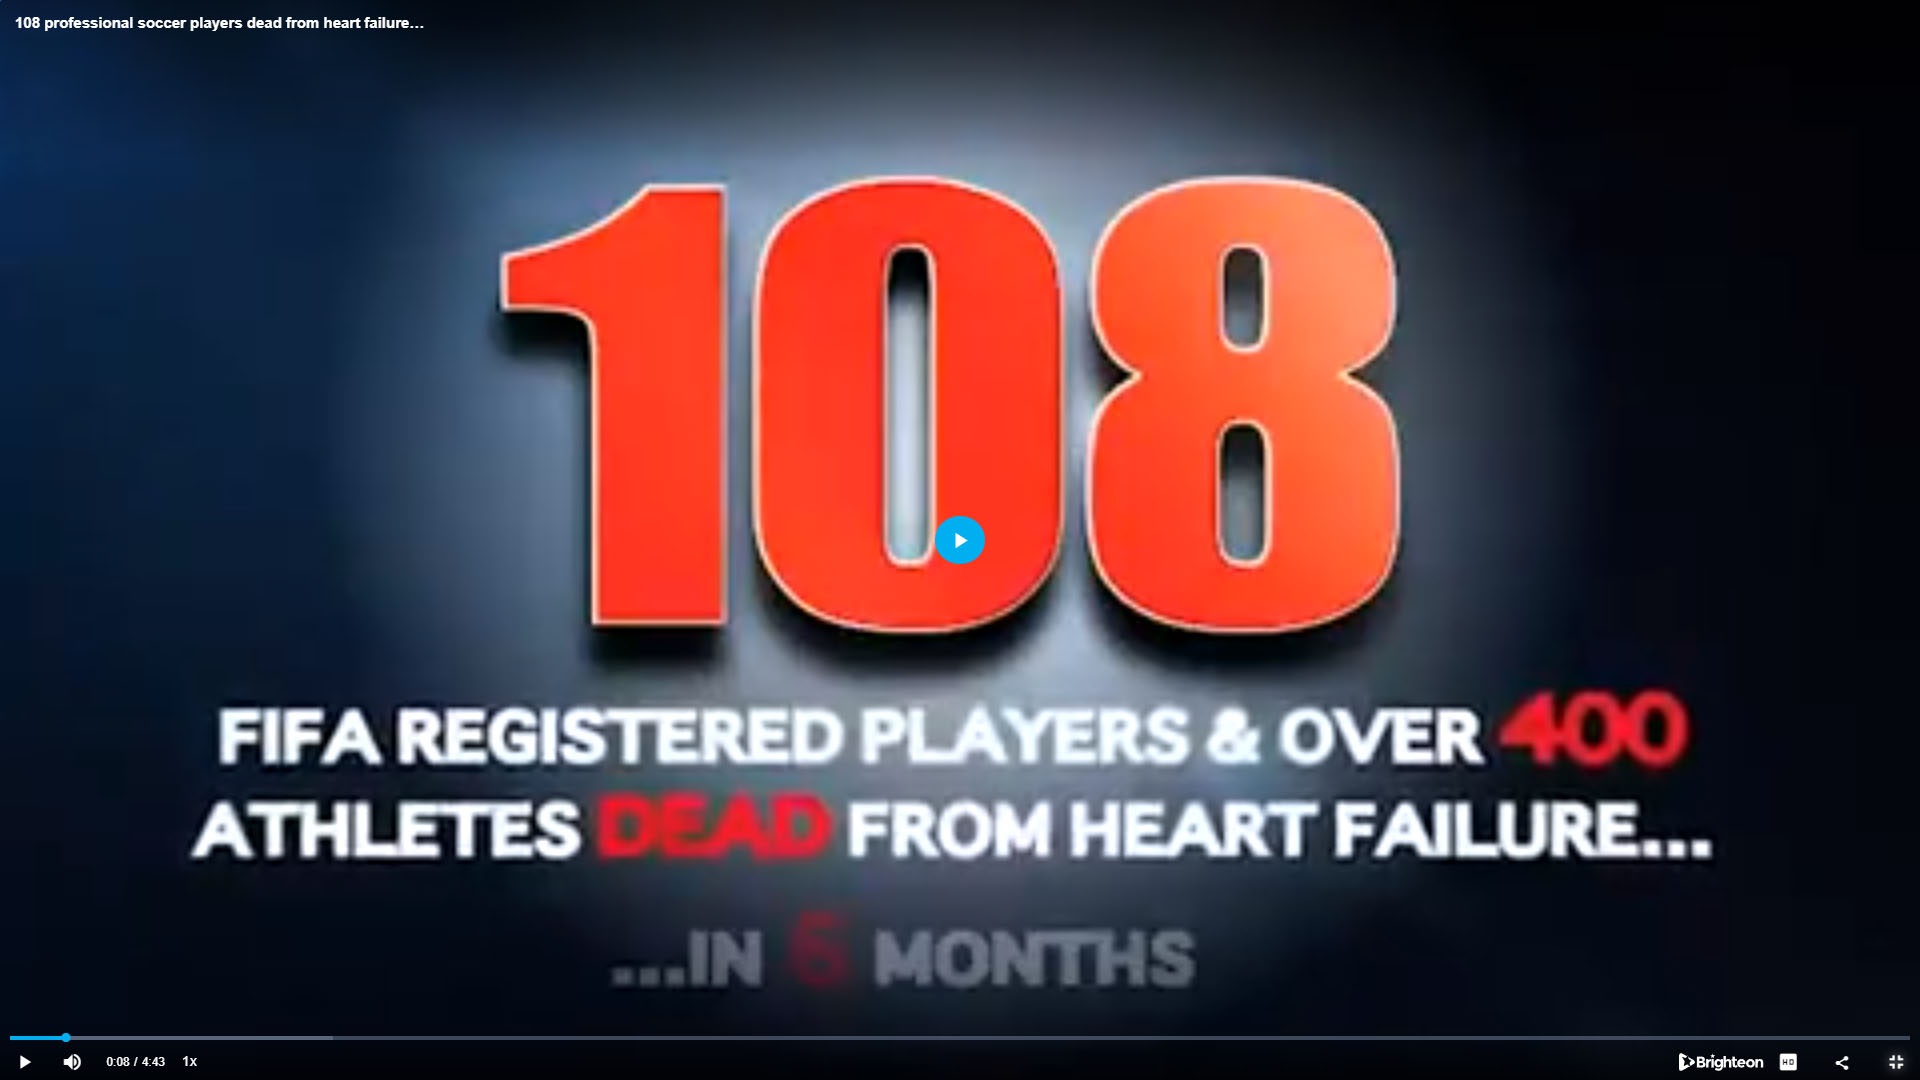 400 Athlete Deaths